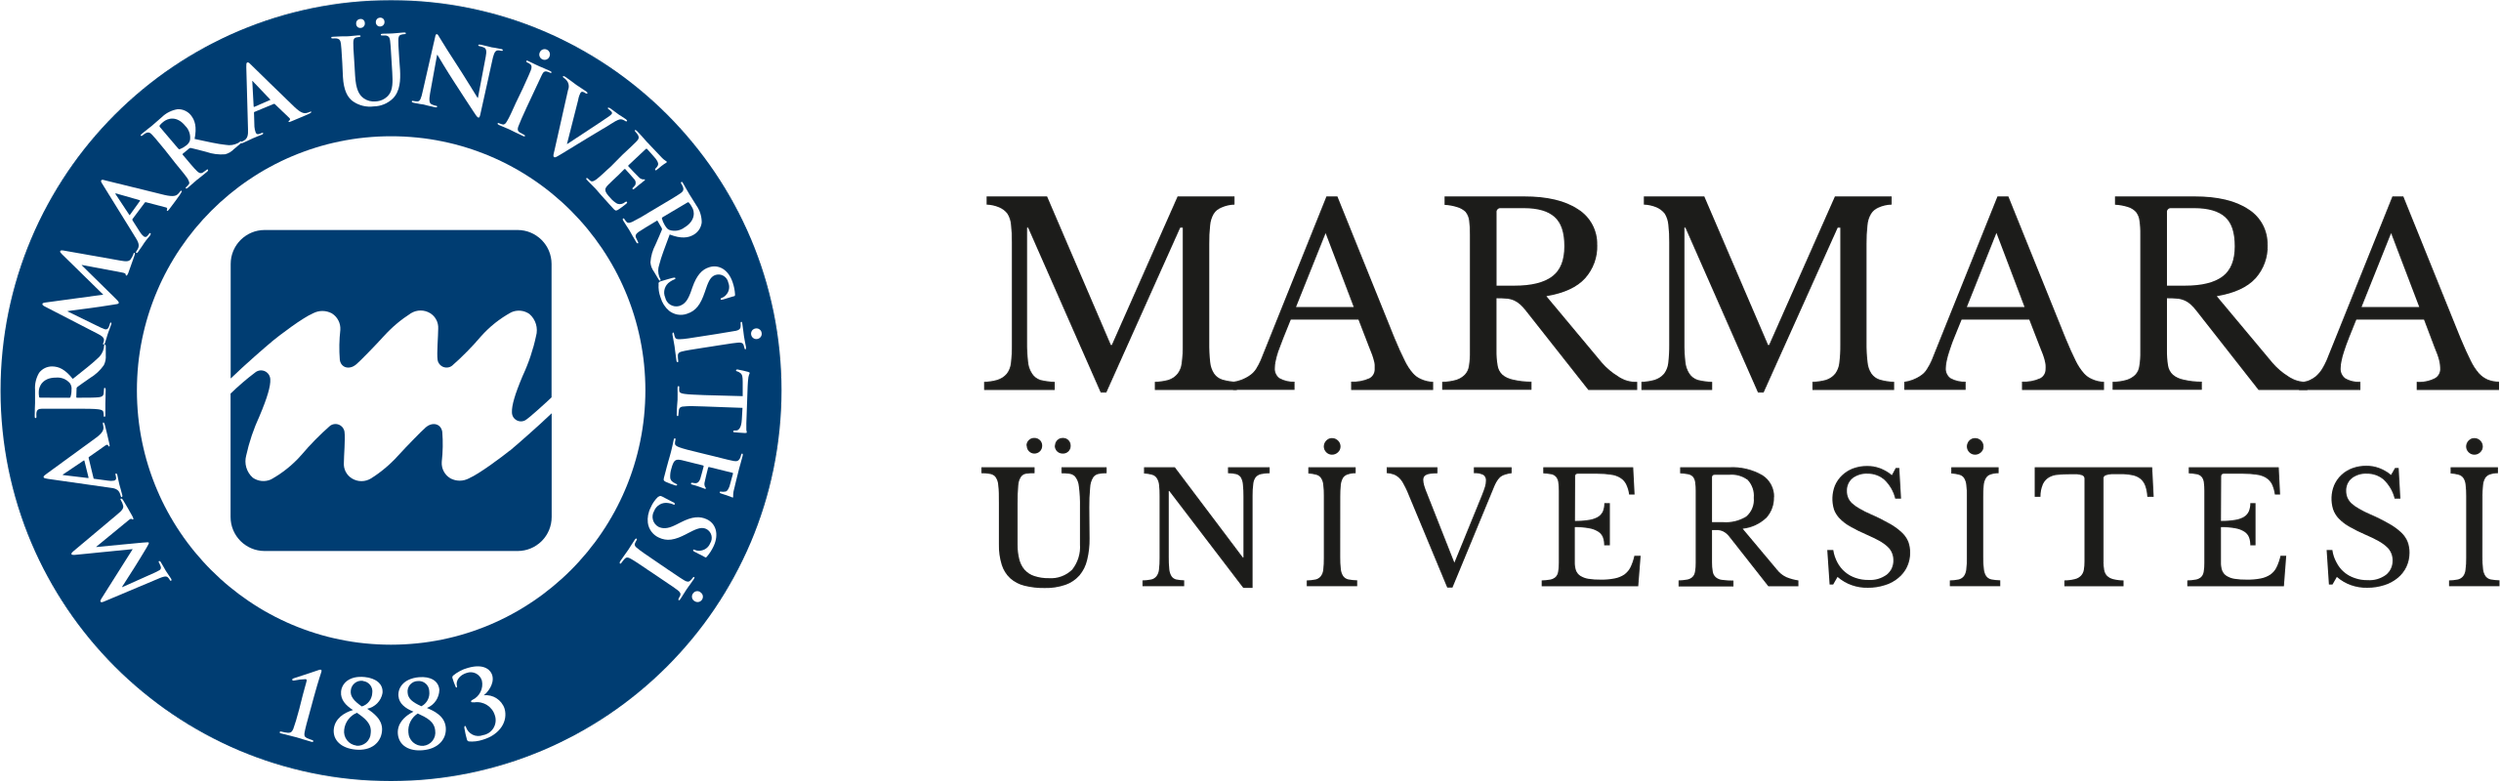 Marmara_logo.png